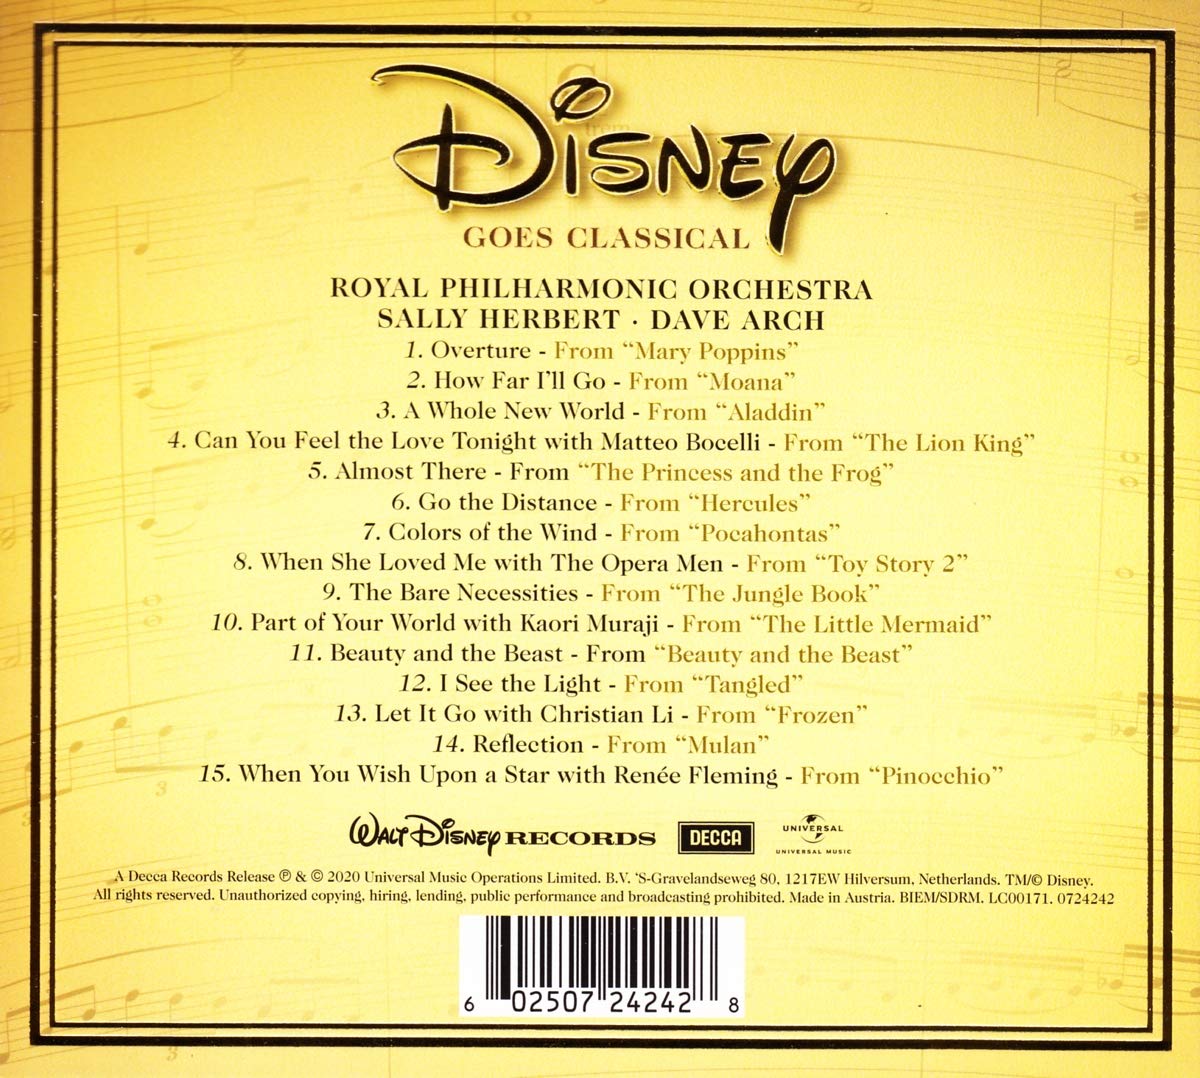 클래식으로 듣는 디즈니 명곡 시리즈 (Disney Goes Classical) 